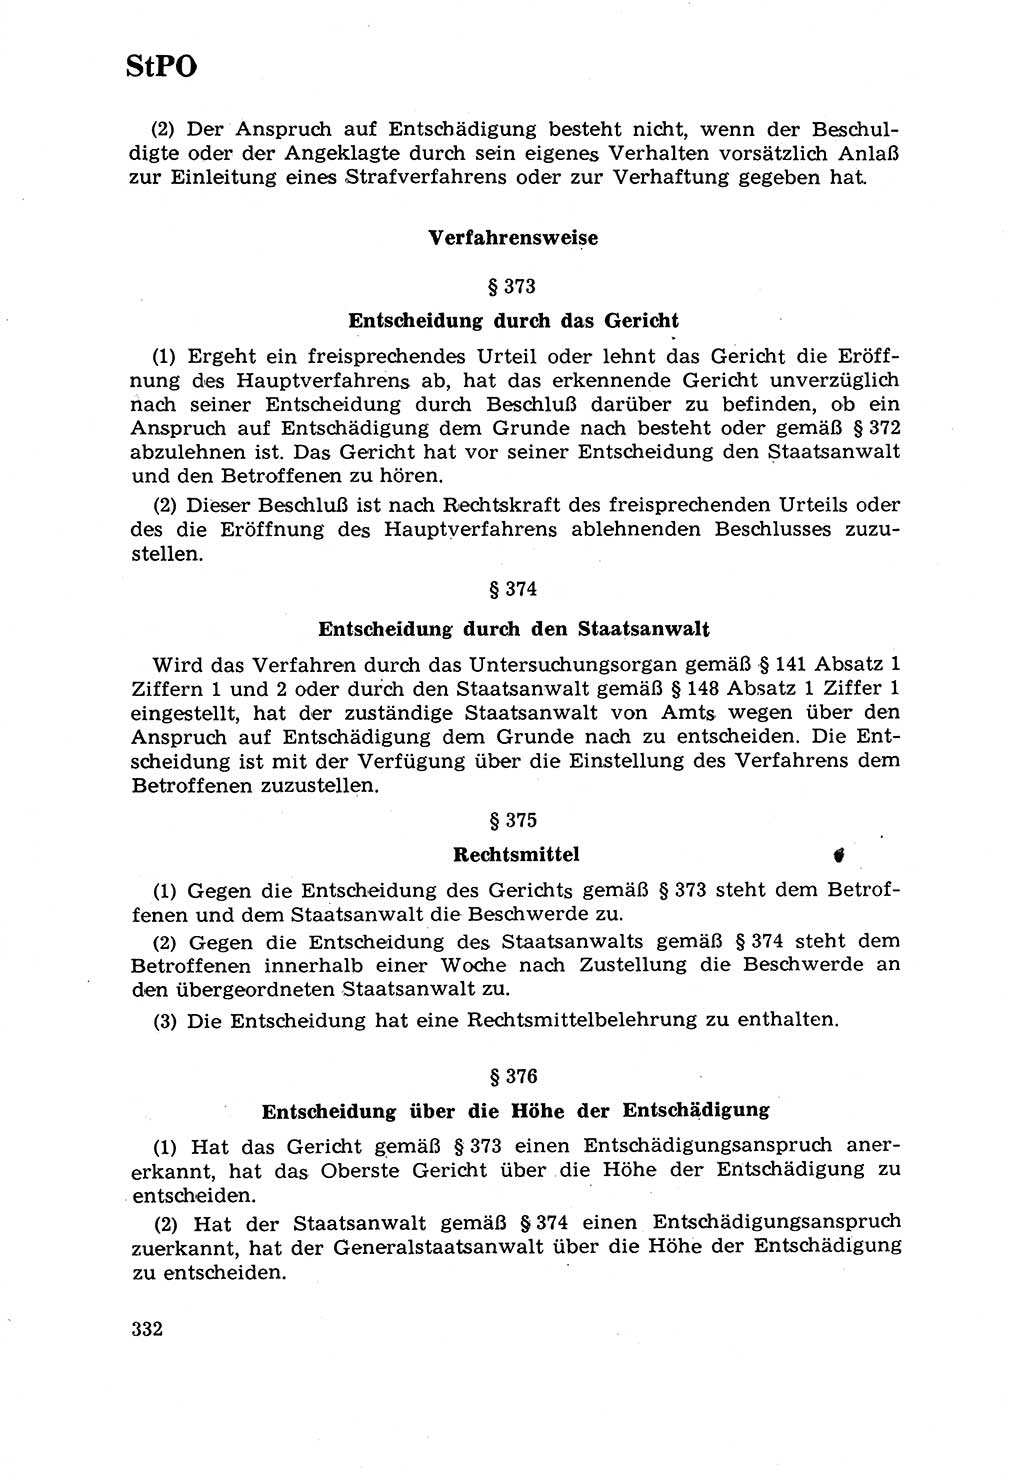 Strafrecht [Deutsche Demokratische Republik (DDR)] 1968, Seite 332 (Strafr. DDR 1968, S. 332)